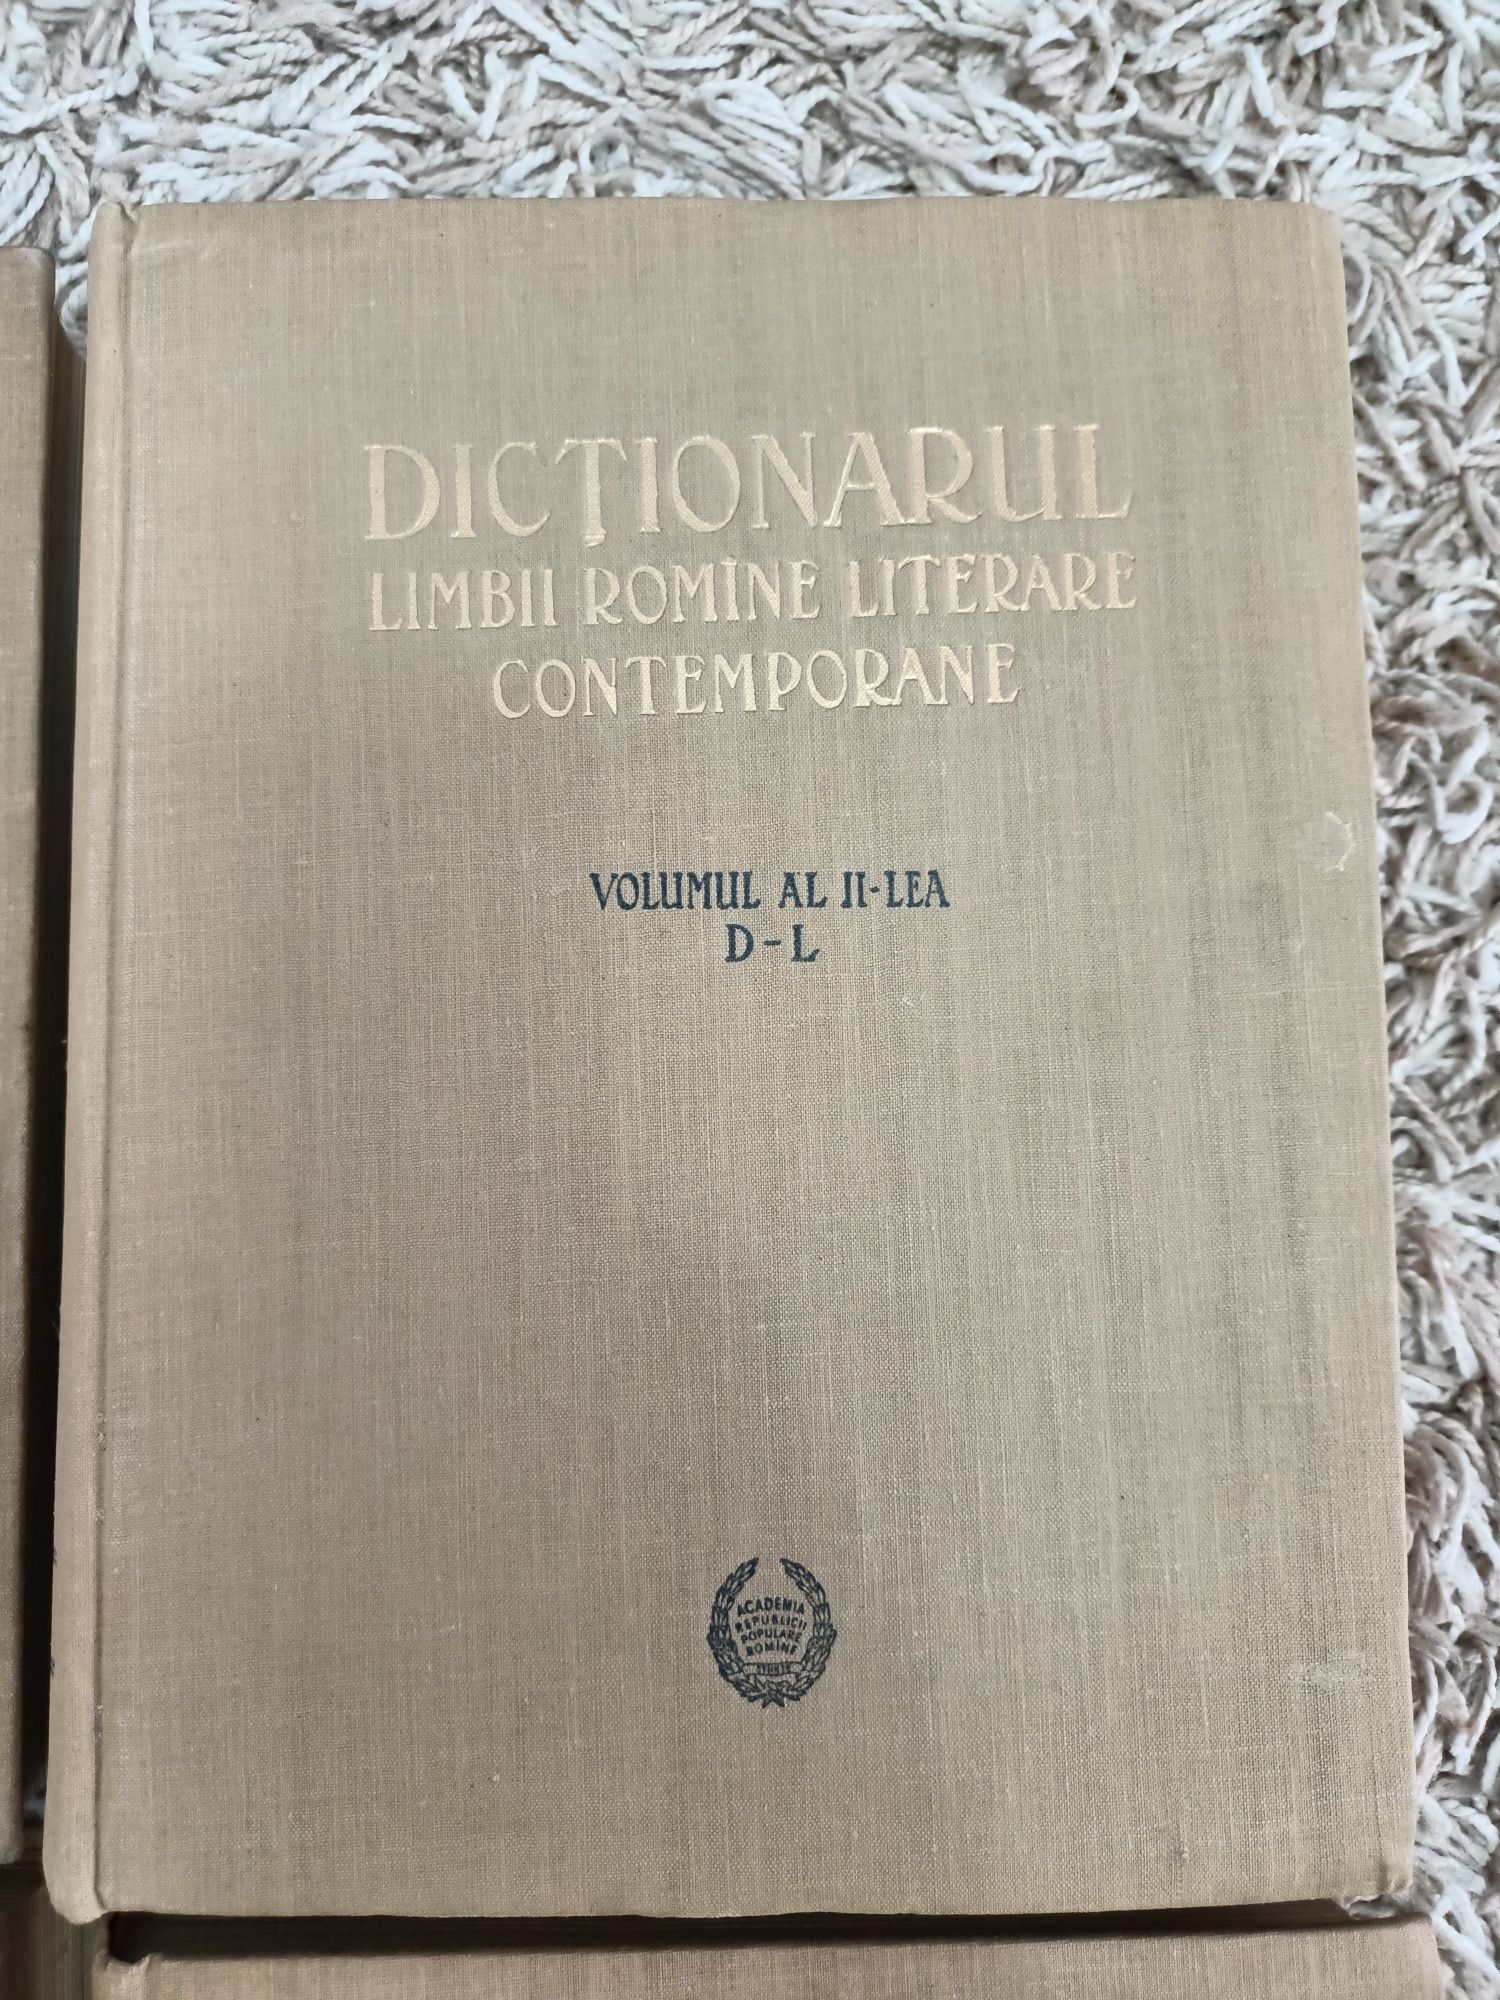 Dictionarul Limbii Romane Literare Contemporane Editat in 1955